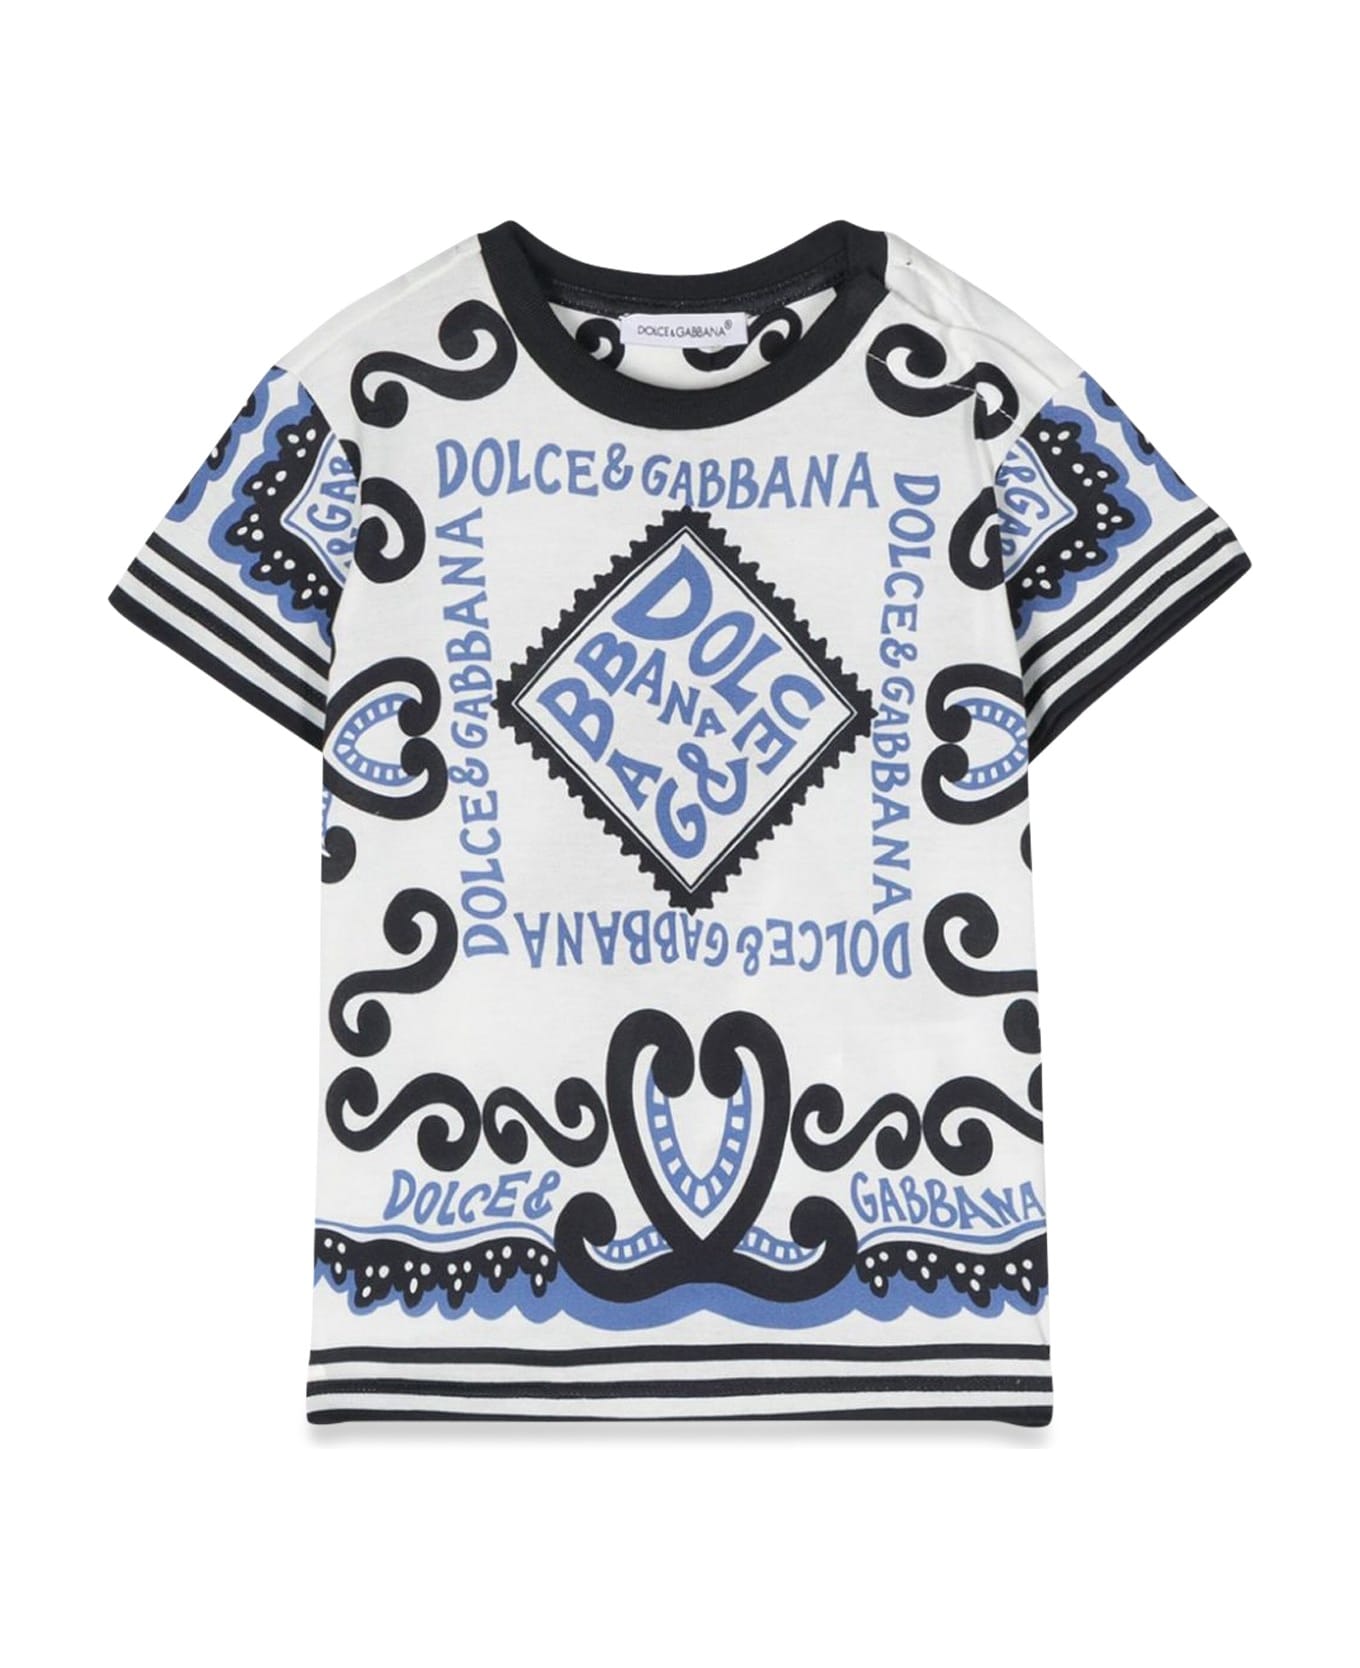 Dolce & Gabbana Short Sleeve T-shirt - AZZURRO